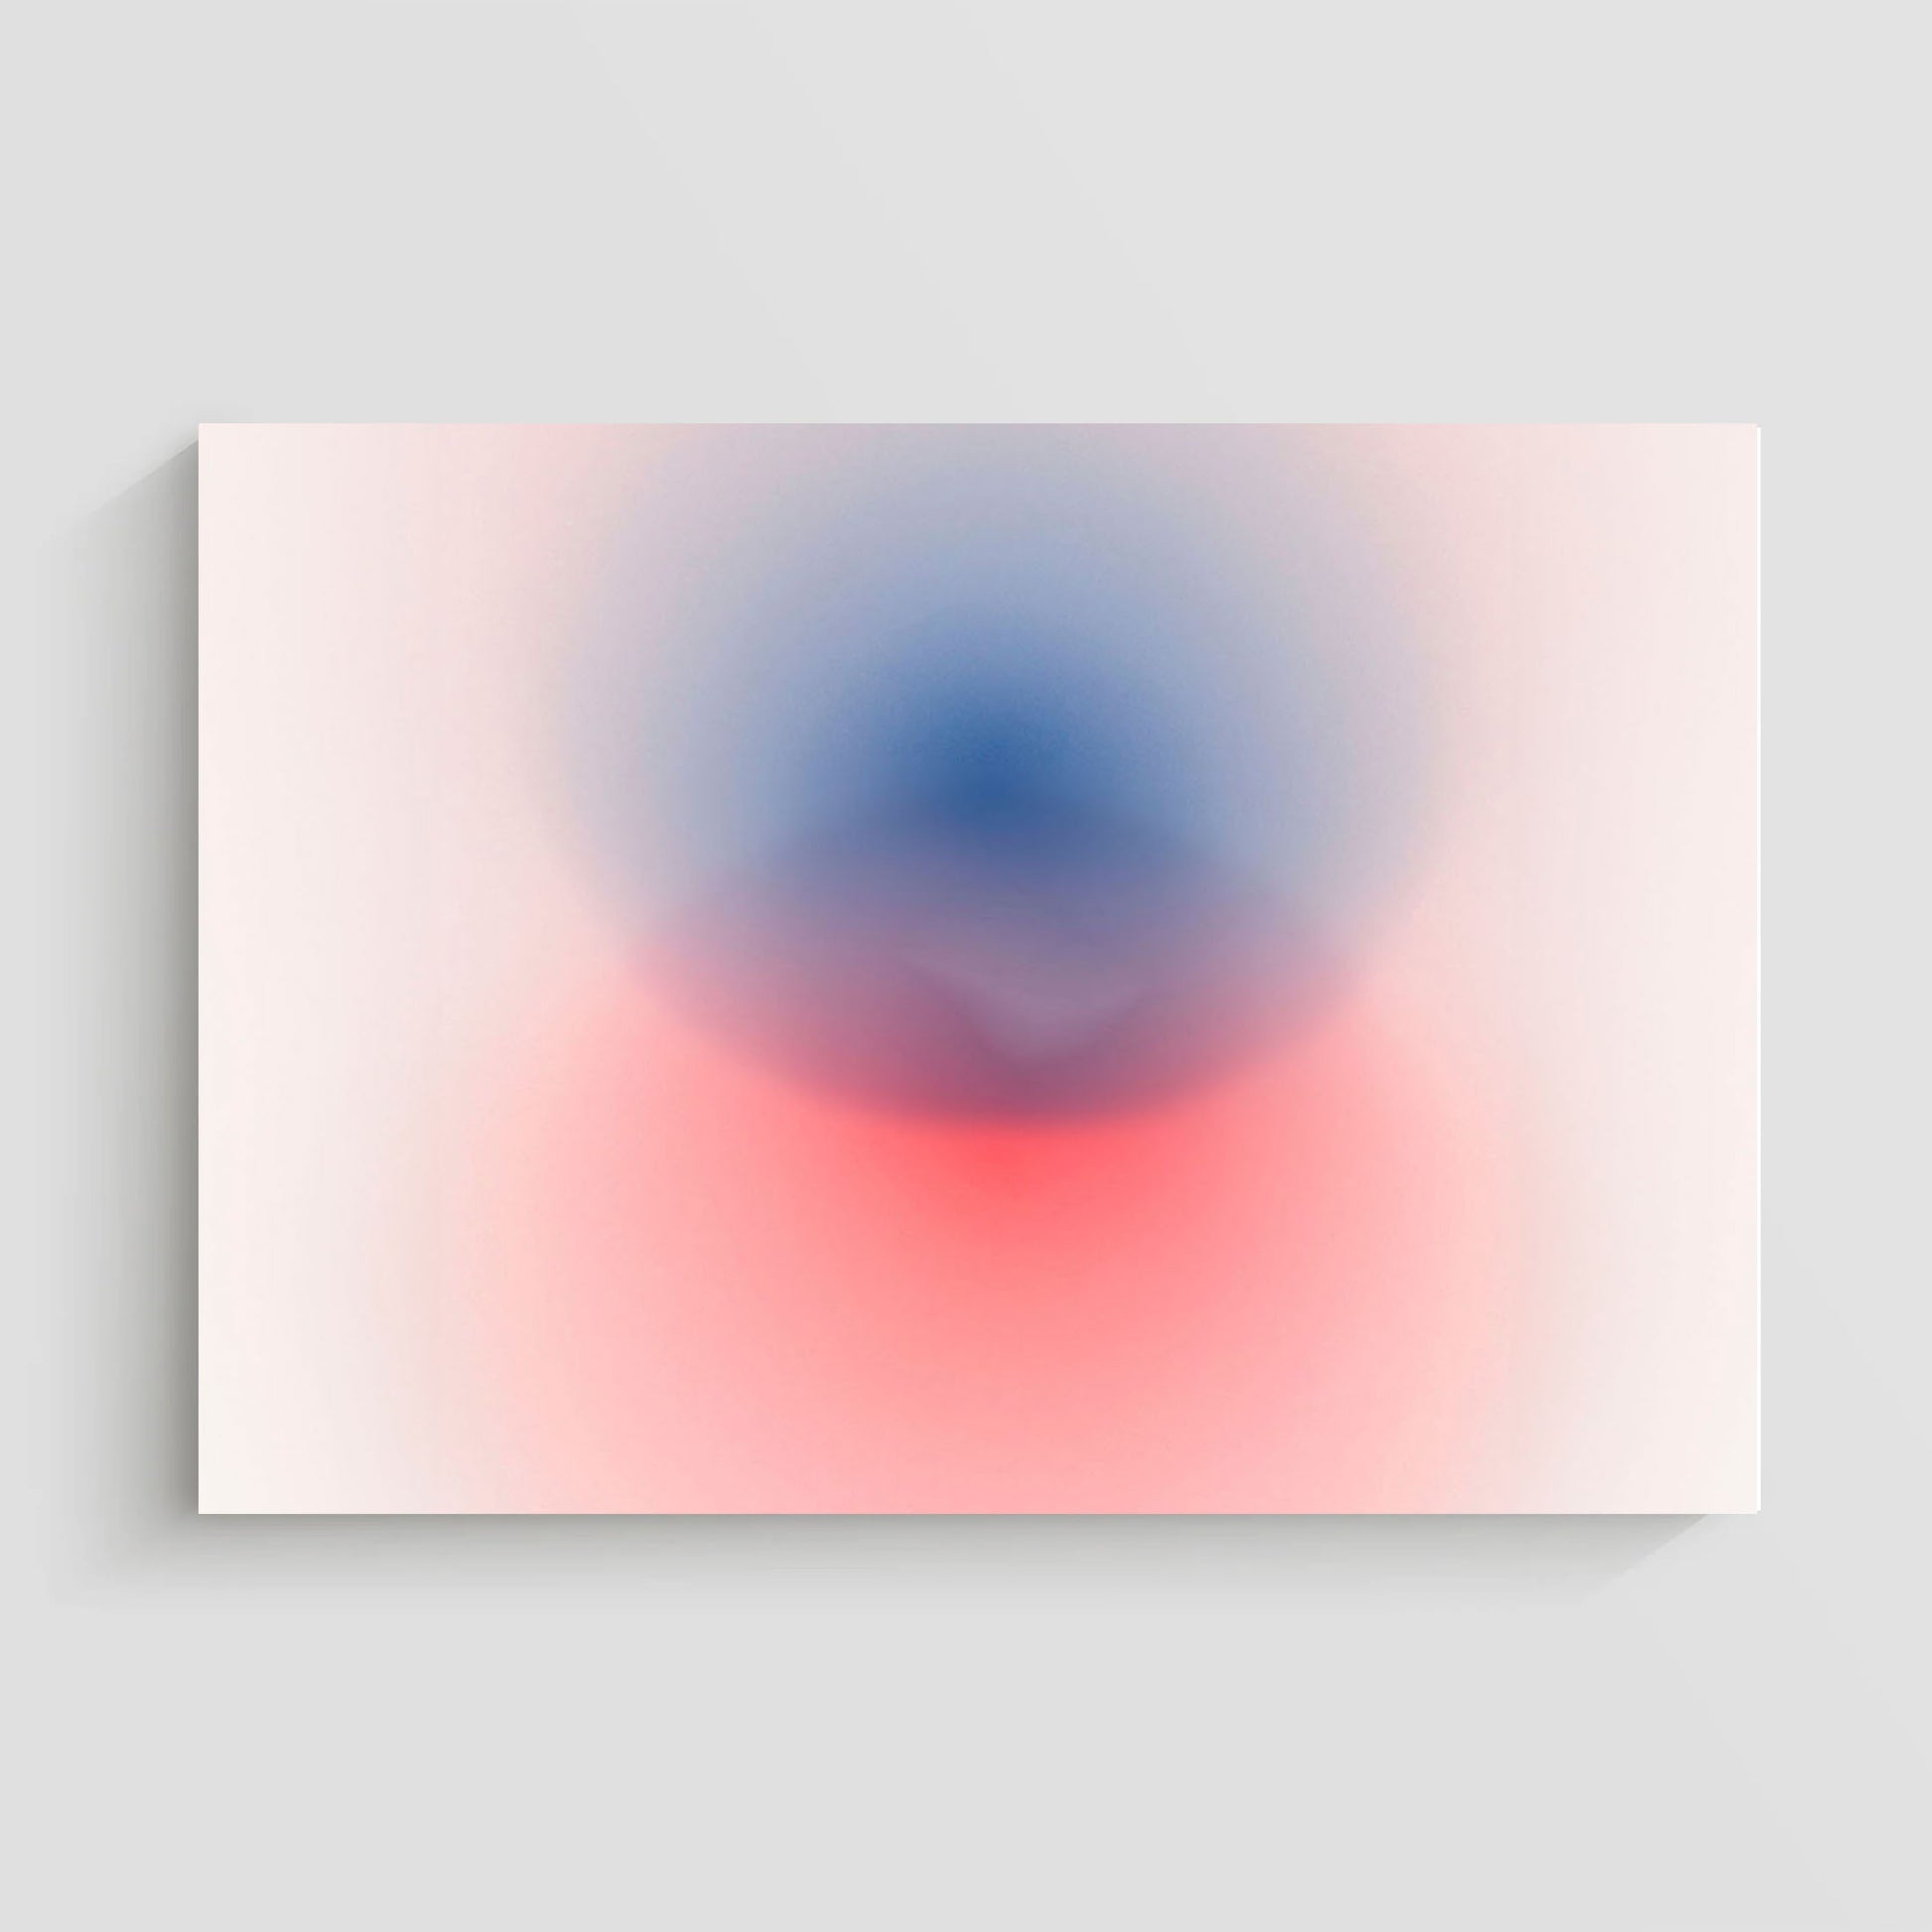 Imagen de arte abstracto que muestra una fusión de colores rojo y azul en un fondo claro, creando un efecto visual suave y etéreo.